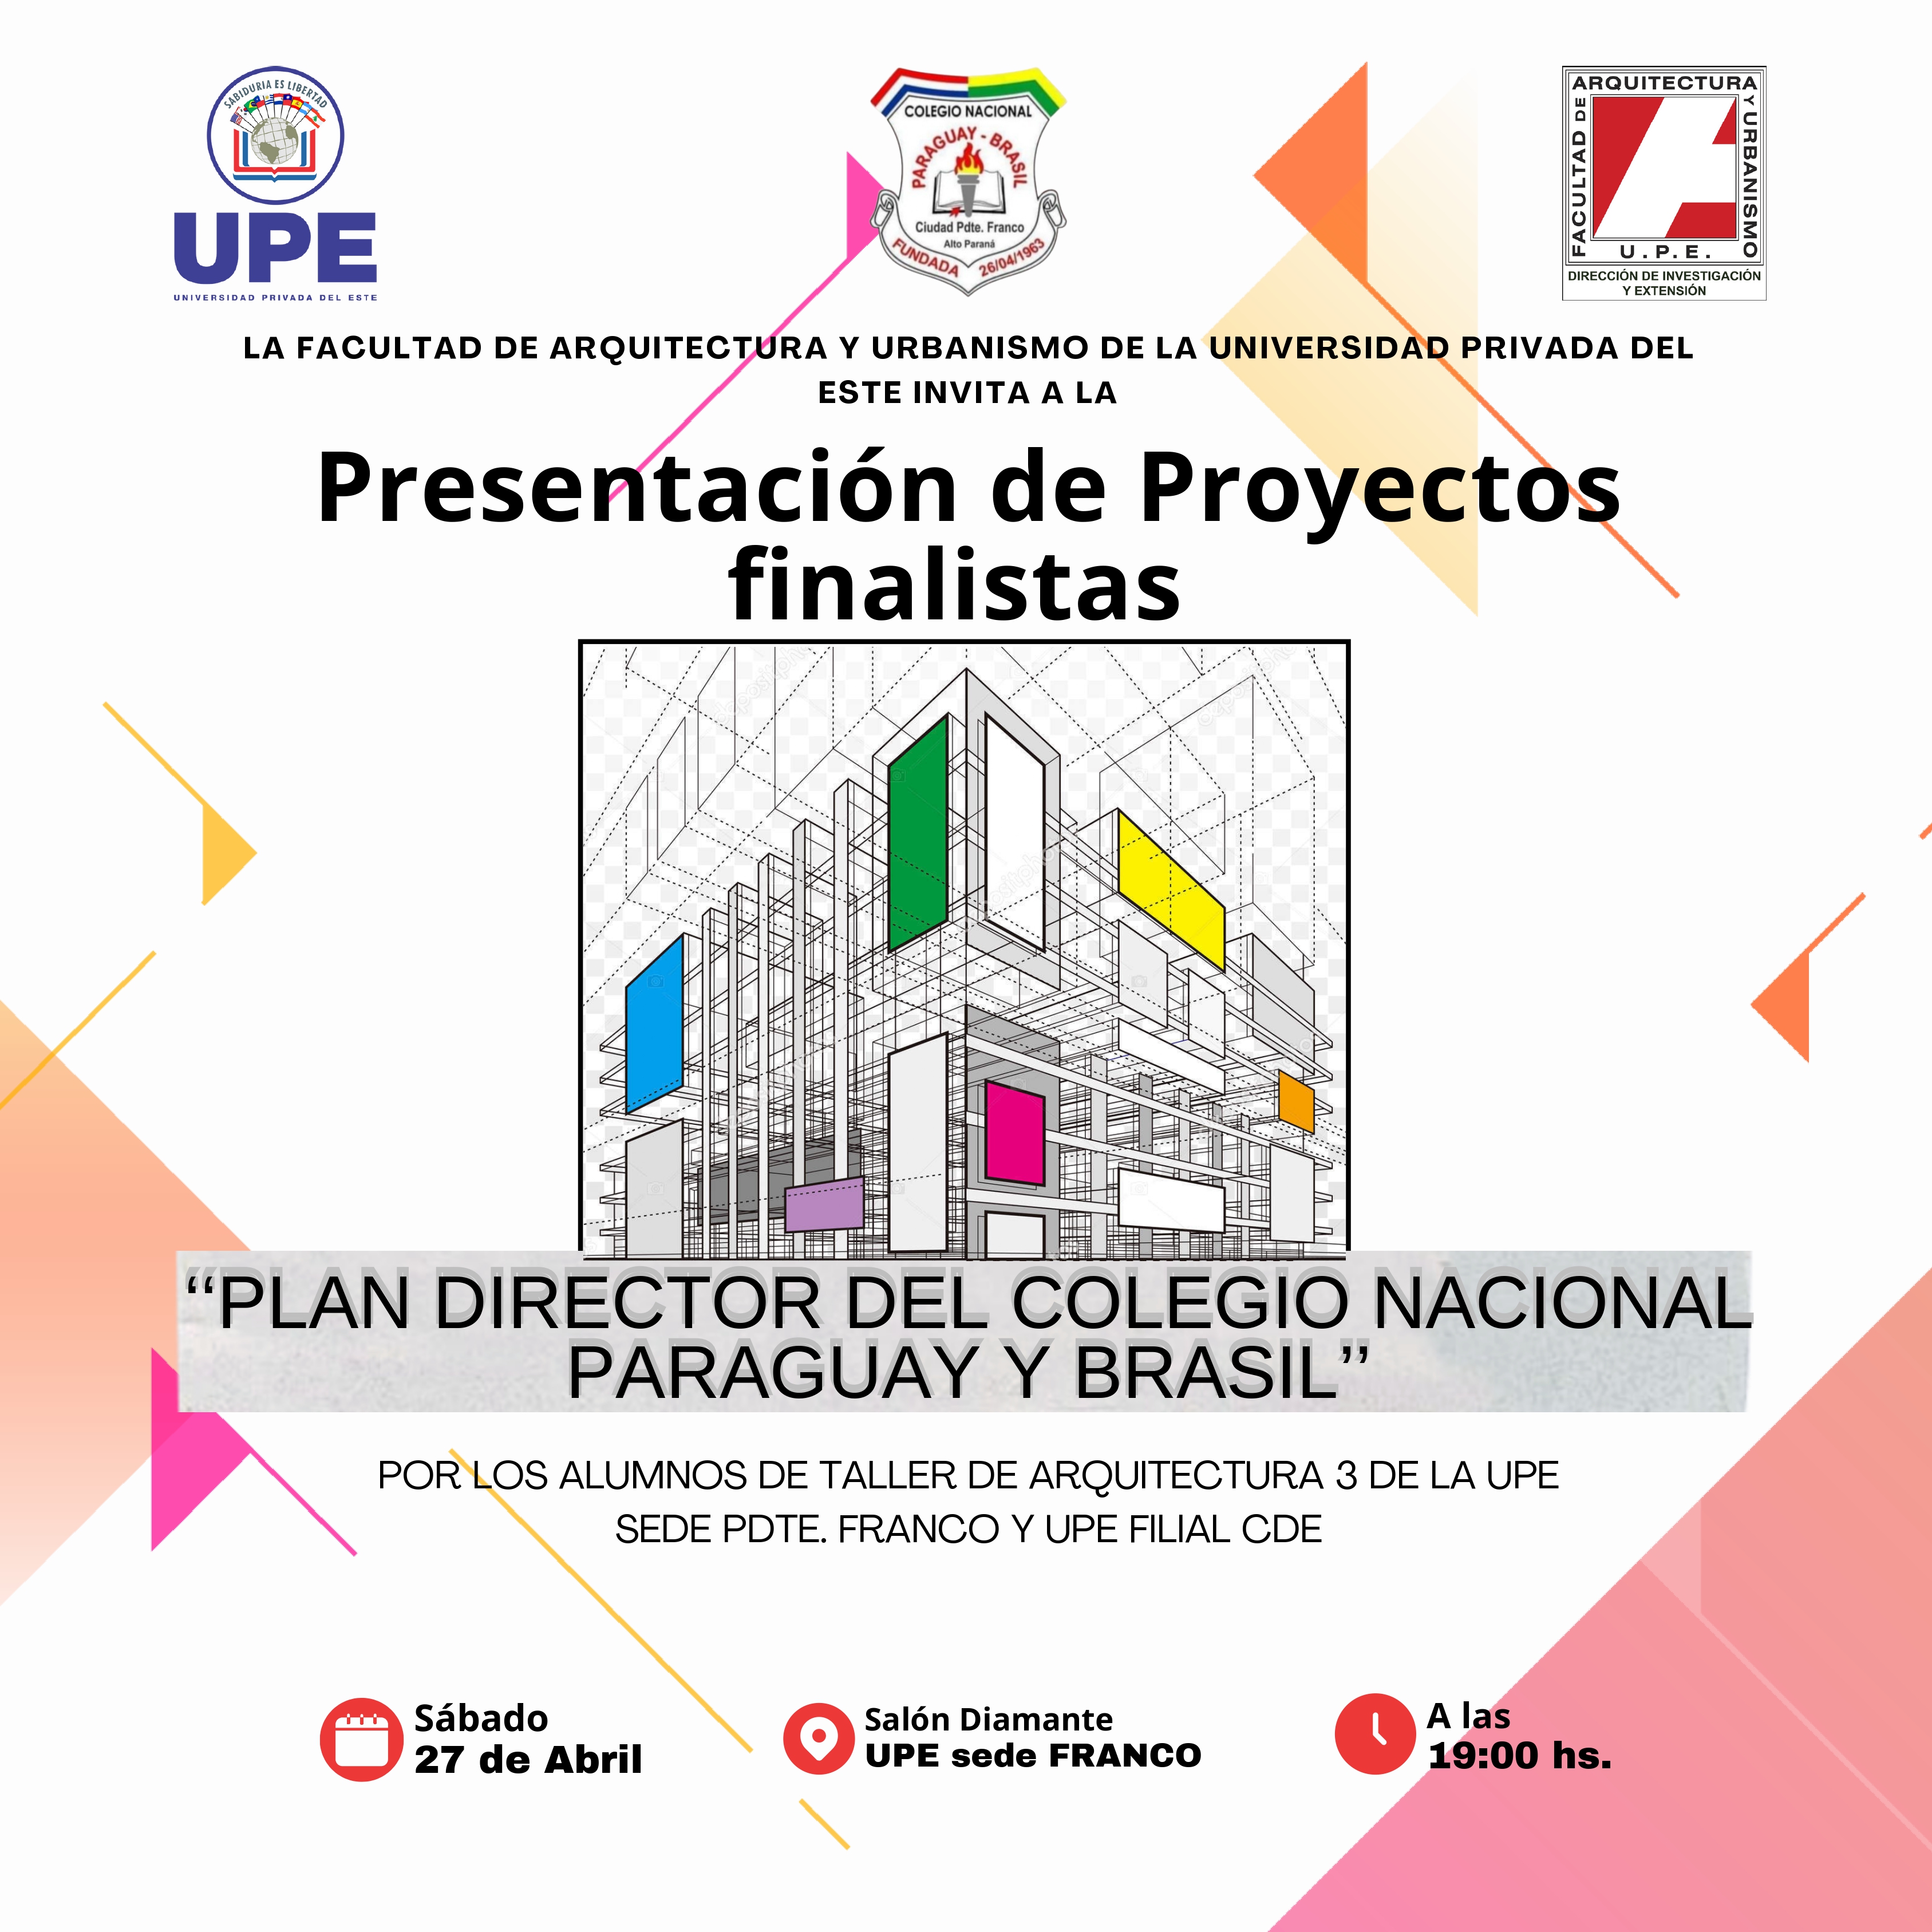 Presentación de Proyectos Finalistas - Facultad de Arquitectura y Urbanismo (UPE)